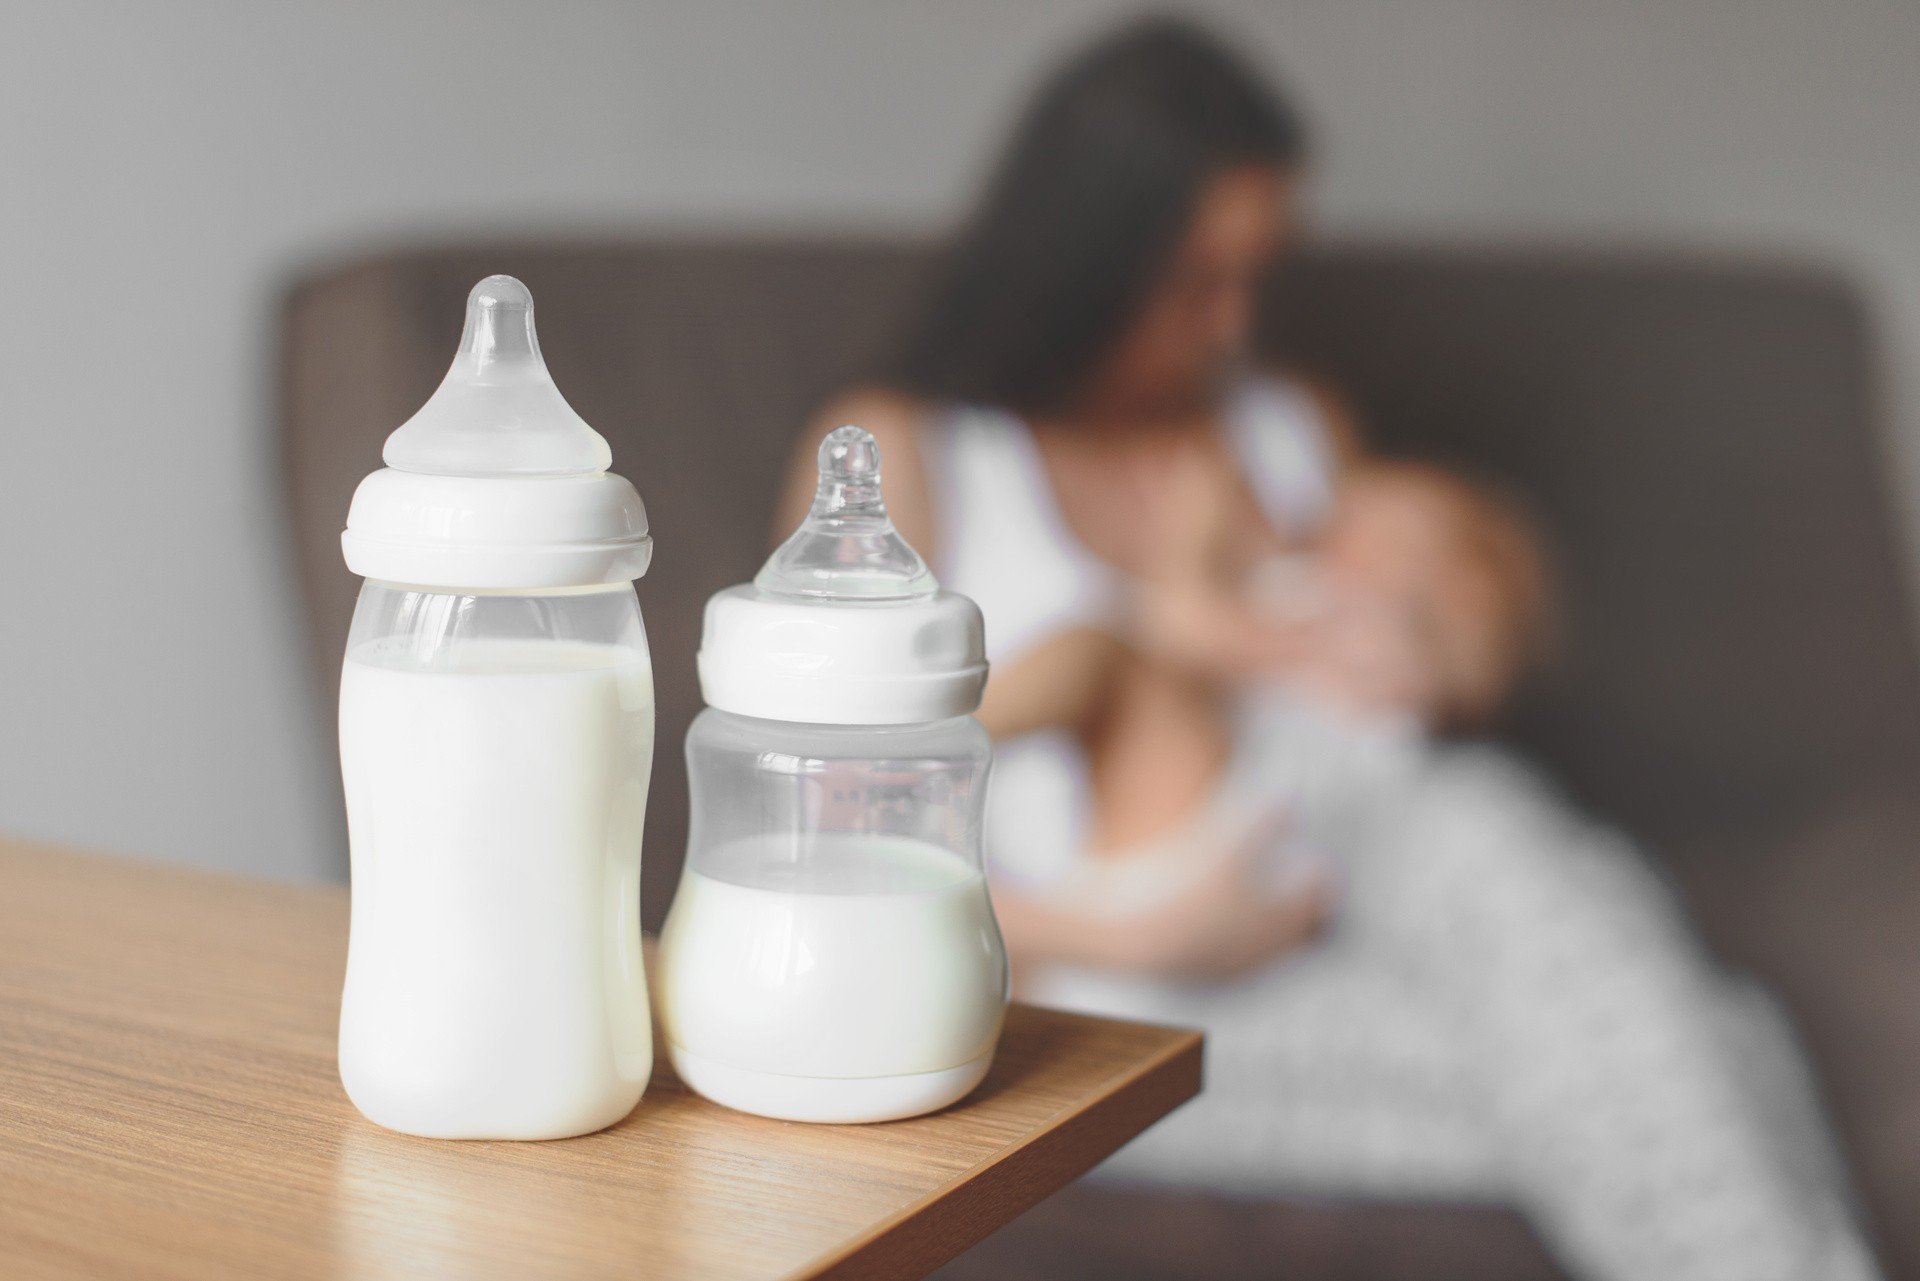 Mlekiem matki można się dzielić – czym są Banki Mleka Kobiecego? Bezpieczne  odciąganie i przechowywanie pokarmu to podstawa. Jak pomagać? | Strona  Zdrowia